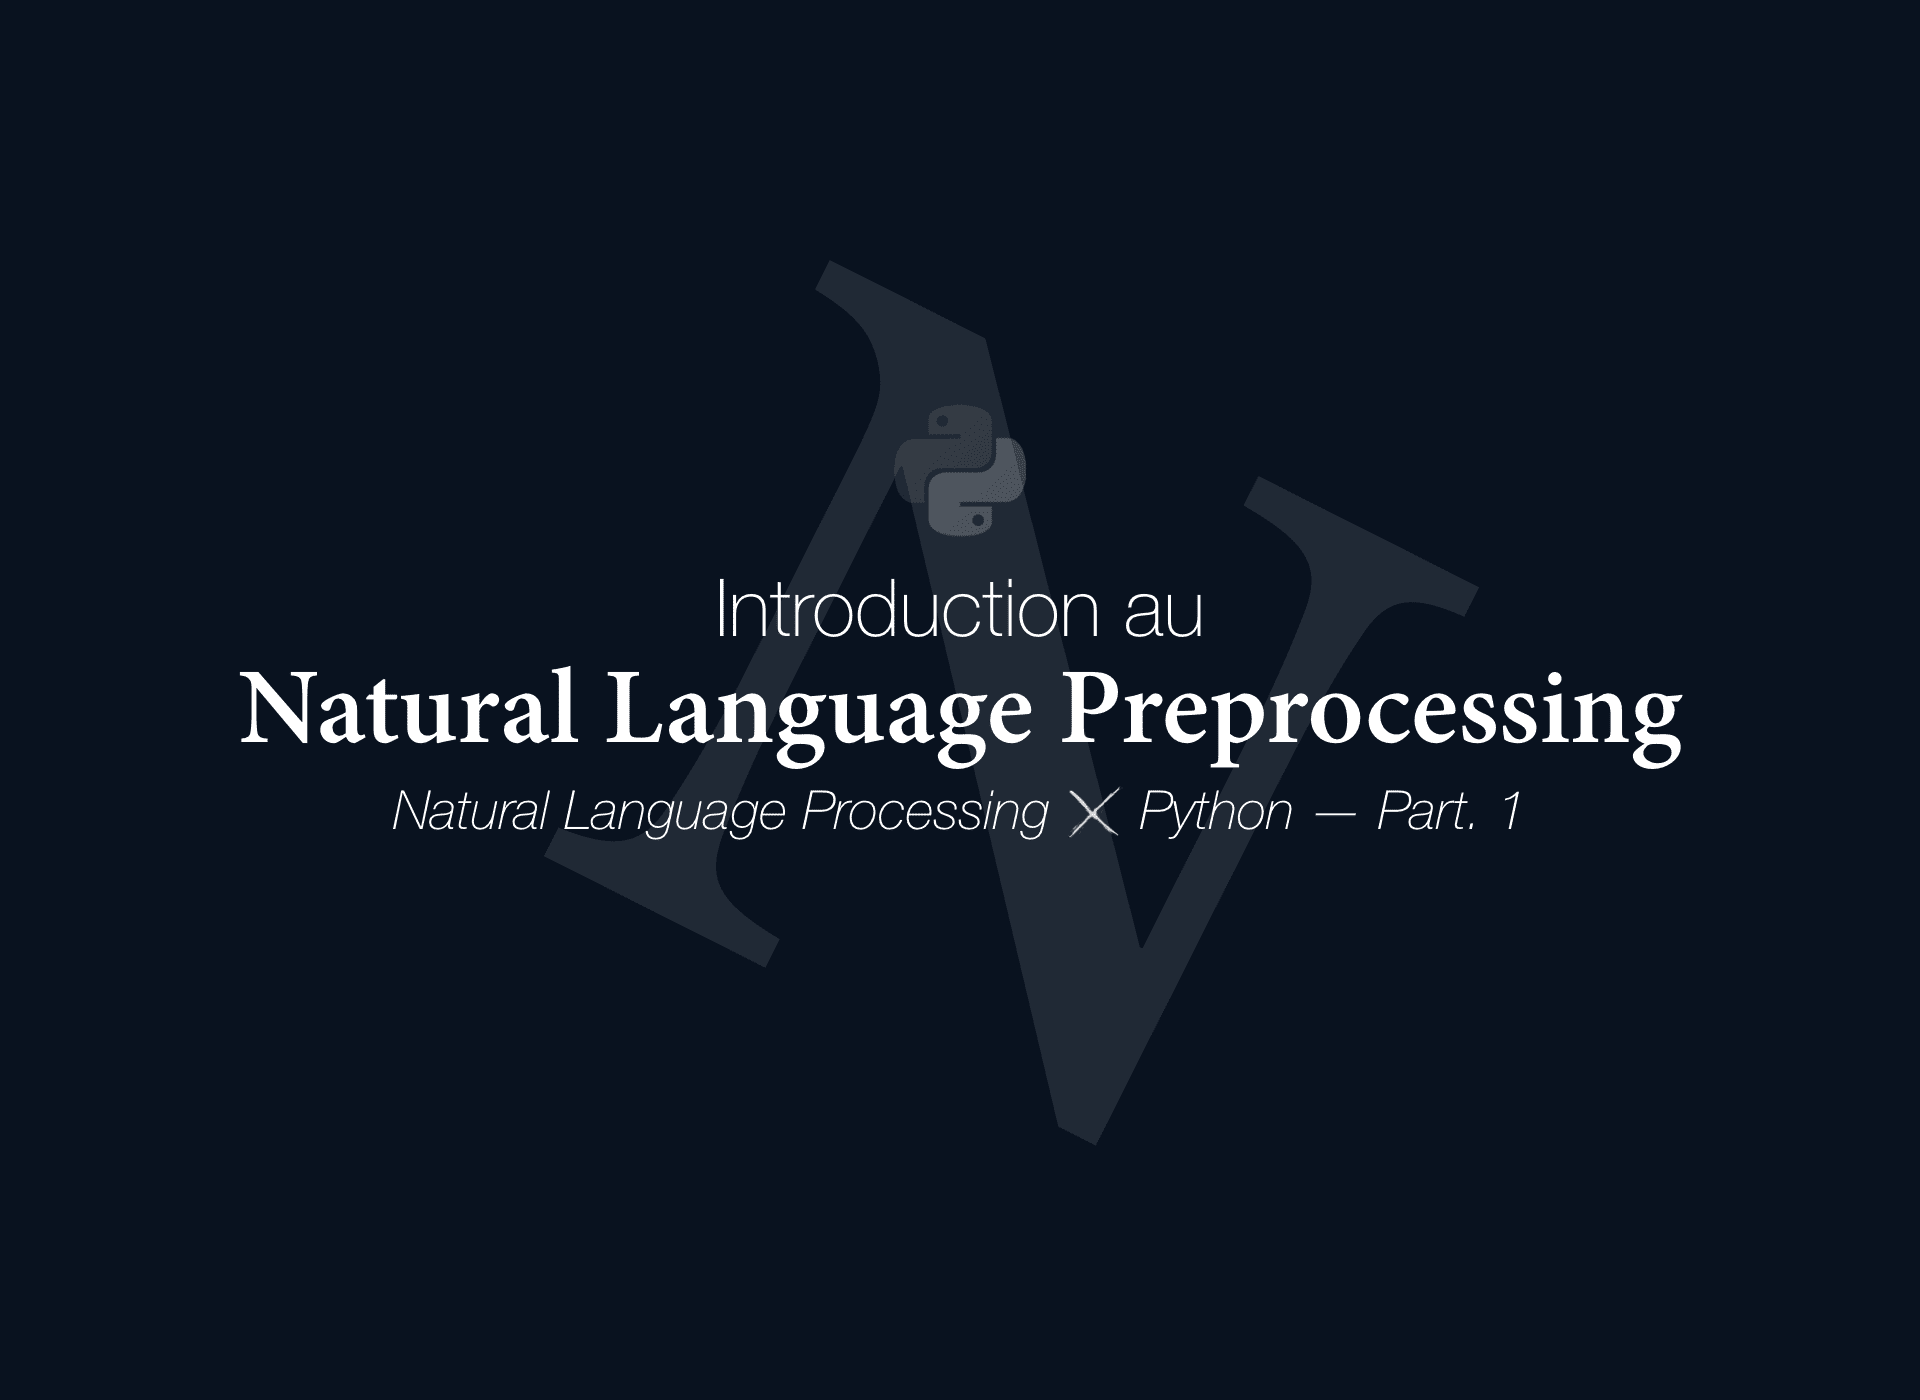 🇫🇷 Introduction au Natural Language Preprocessing - NLPXP (Part. 1) / En cours d'écriture cover image